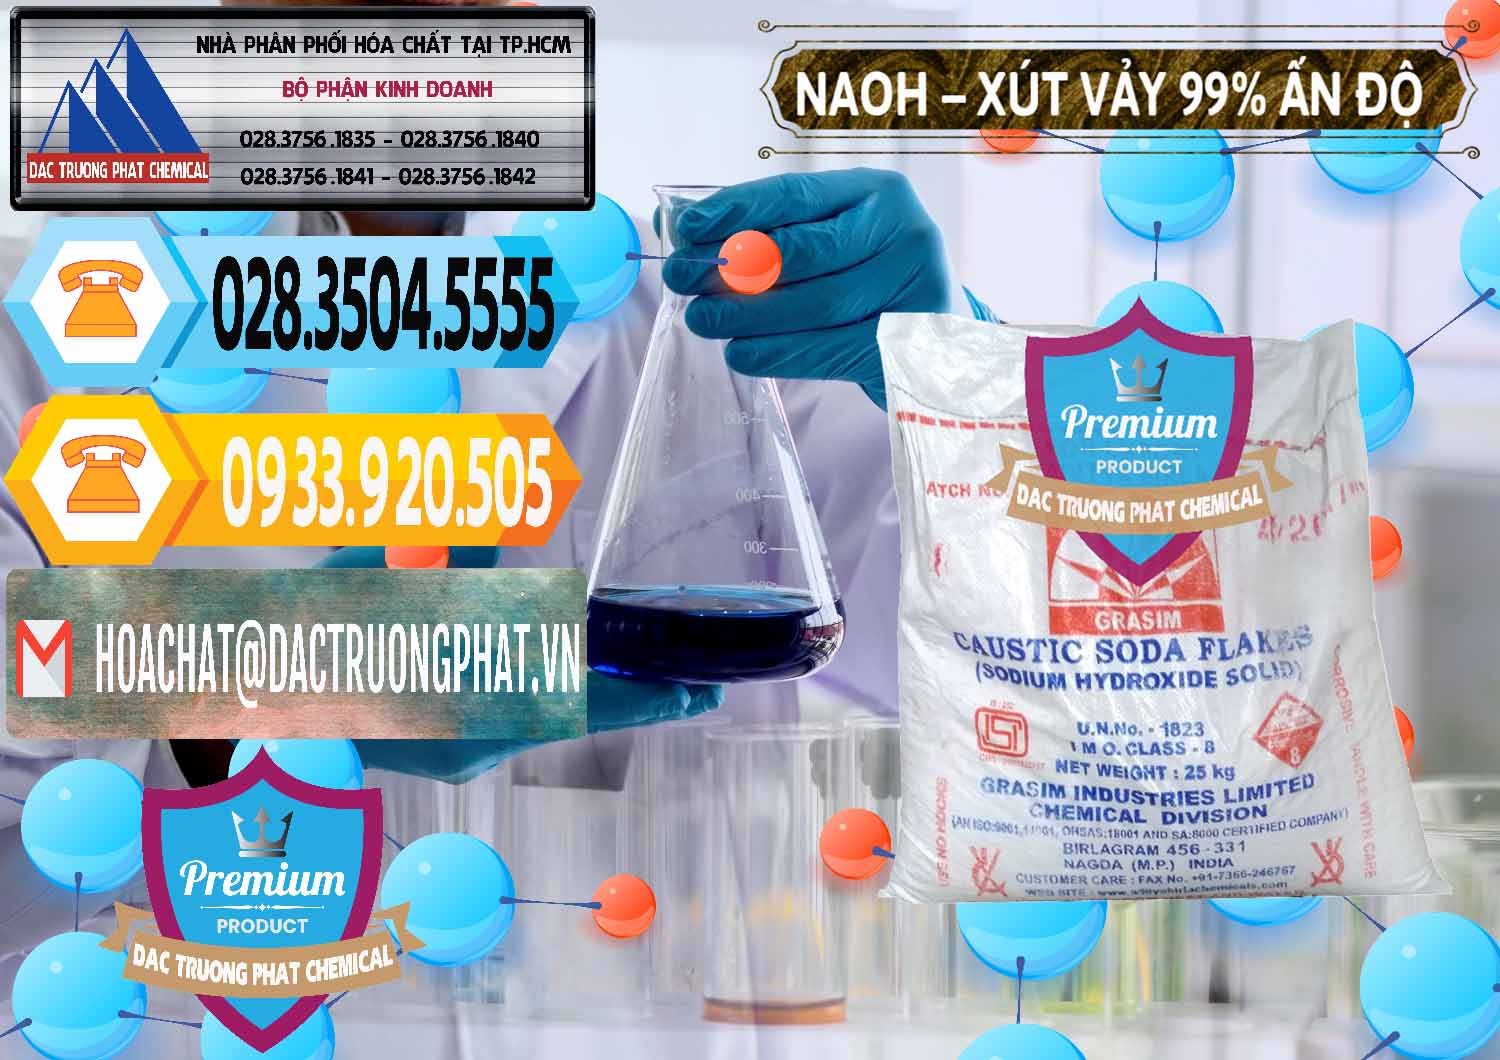 Công ty cung cấp - bán Xút Vảy - NaOH Vảy 99% Aditya Birla Grasim Ấn Độ India - 0171 - Nhà cung cấp ( bán ) hóa chất tại TP.HCM - hoachattayrua.net